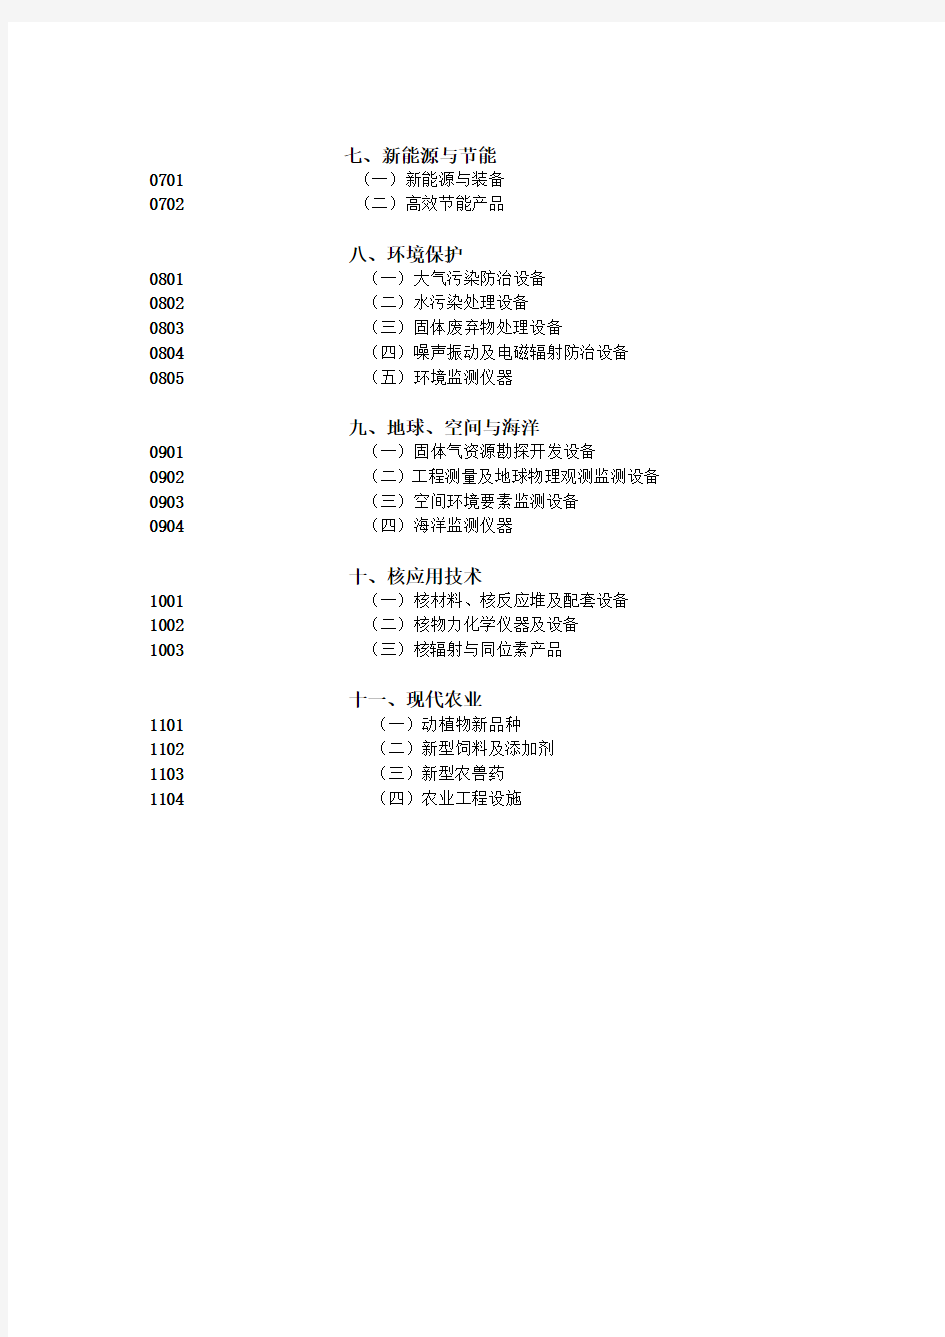 《中国高新技术产品目录》(2006年版)